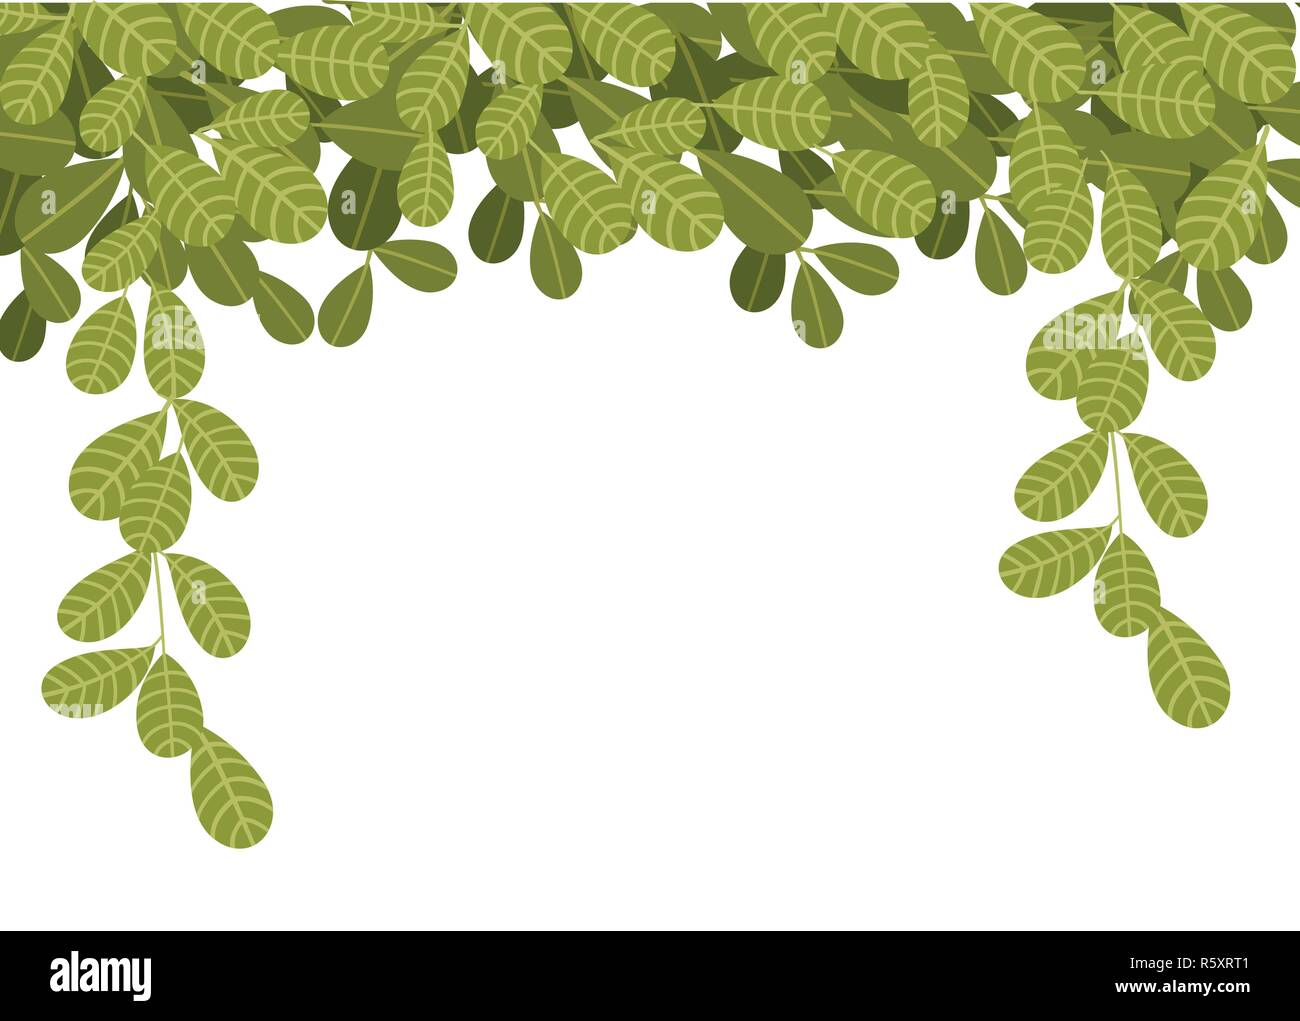 La pendaison de plantes grimpantes avec des feuilles vertes. Feuilles plates pendant vers le bas. Motif floral. Vector illustration sur fond blanc. Illustration de Vecteur